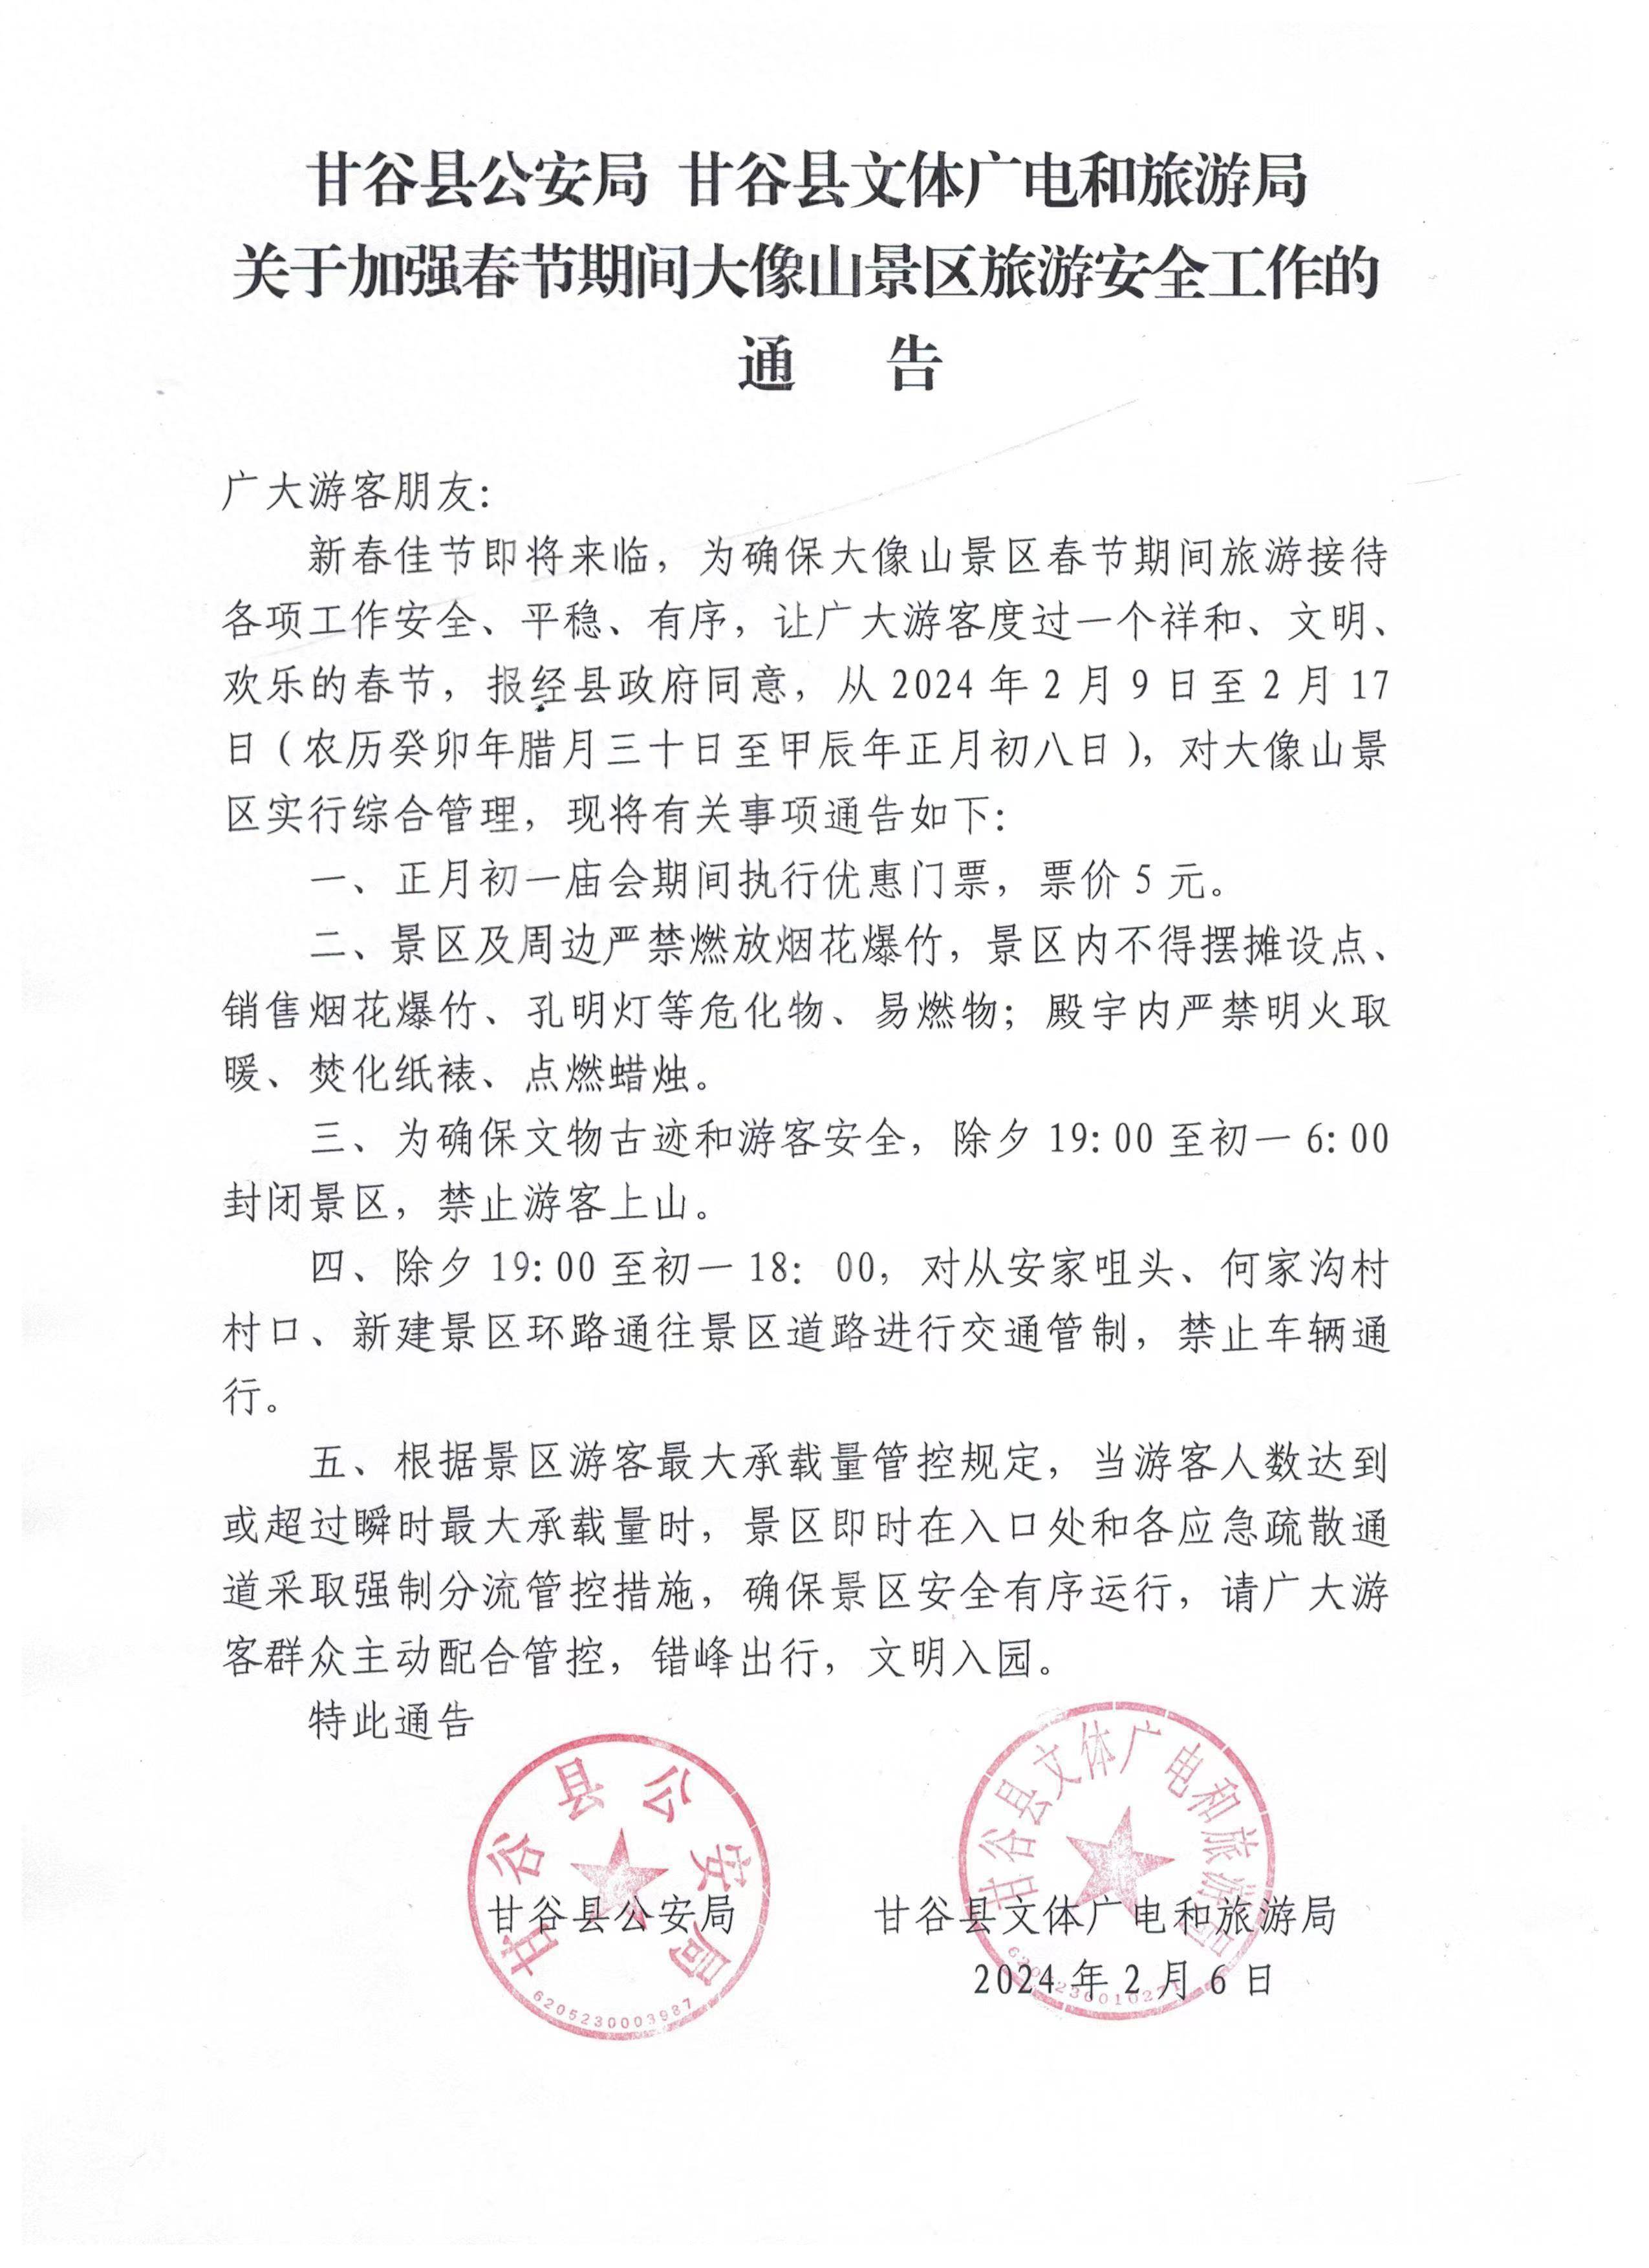 2024年2月6日甘谷县文体广电和旅游局甘谷县公安局特此通告五,根据